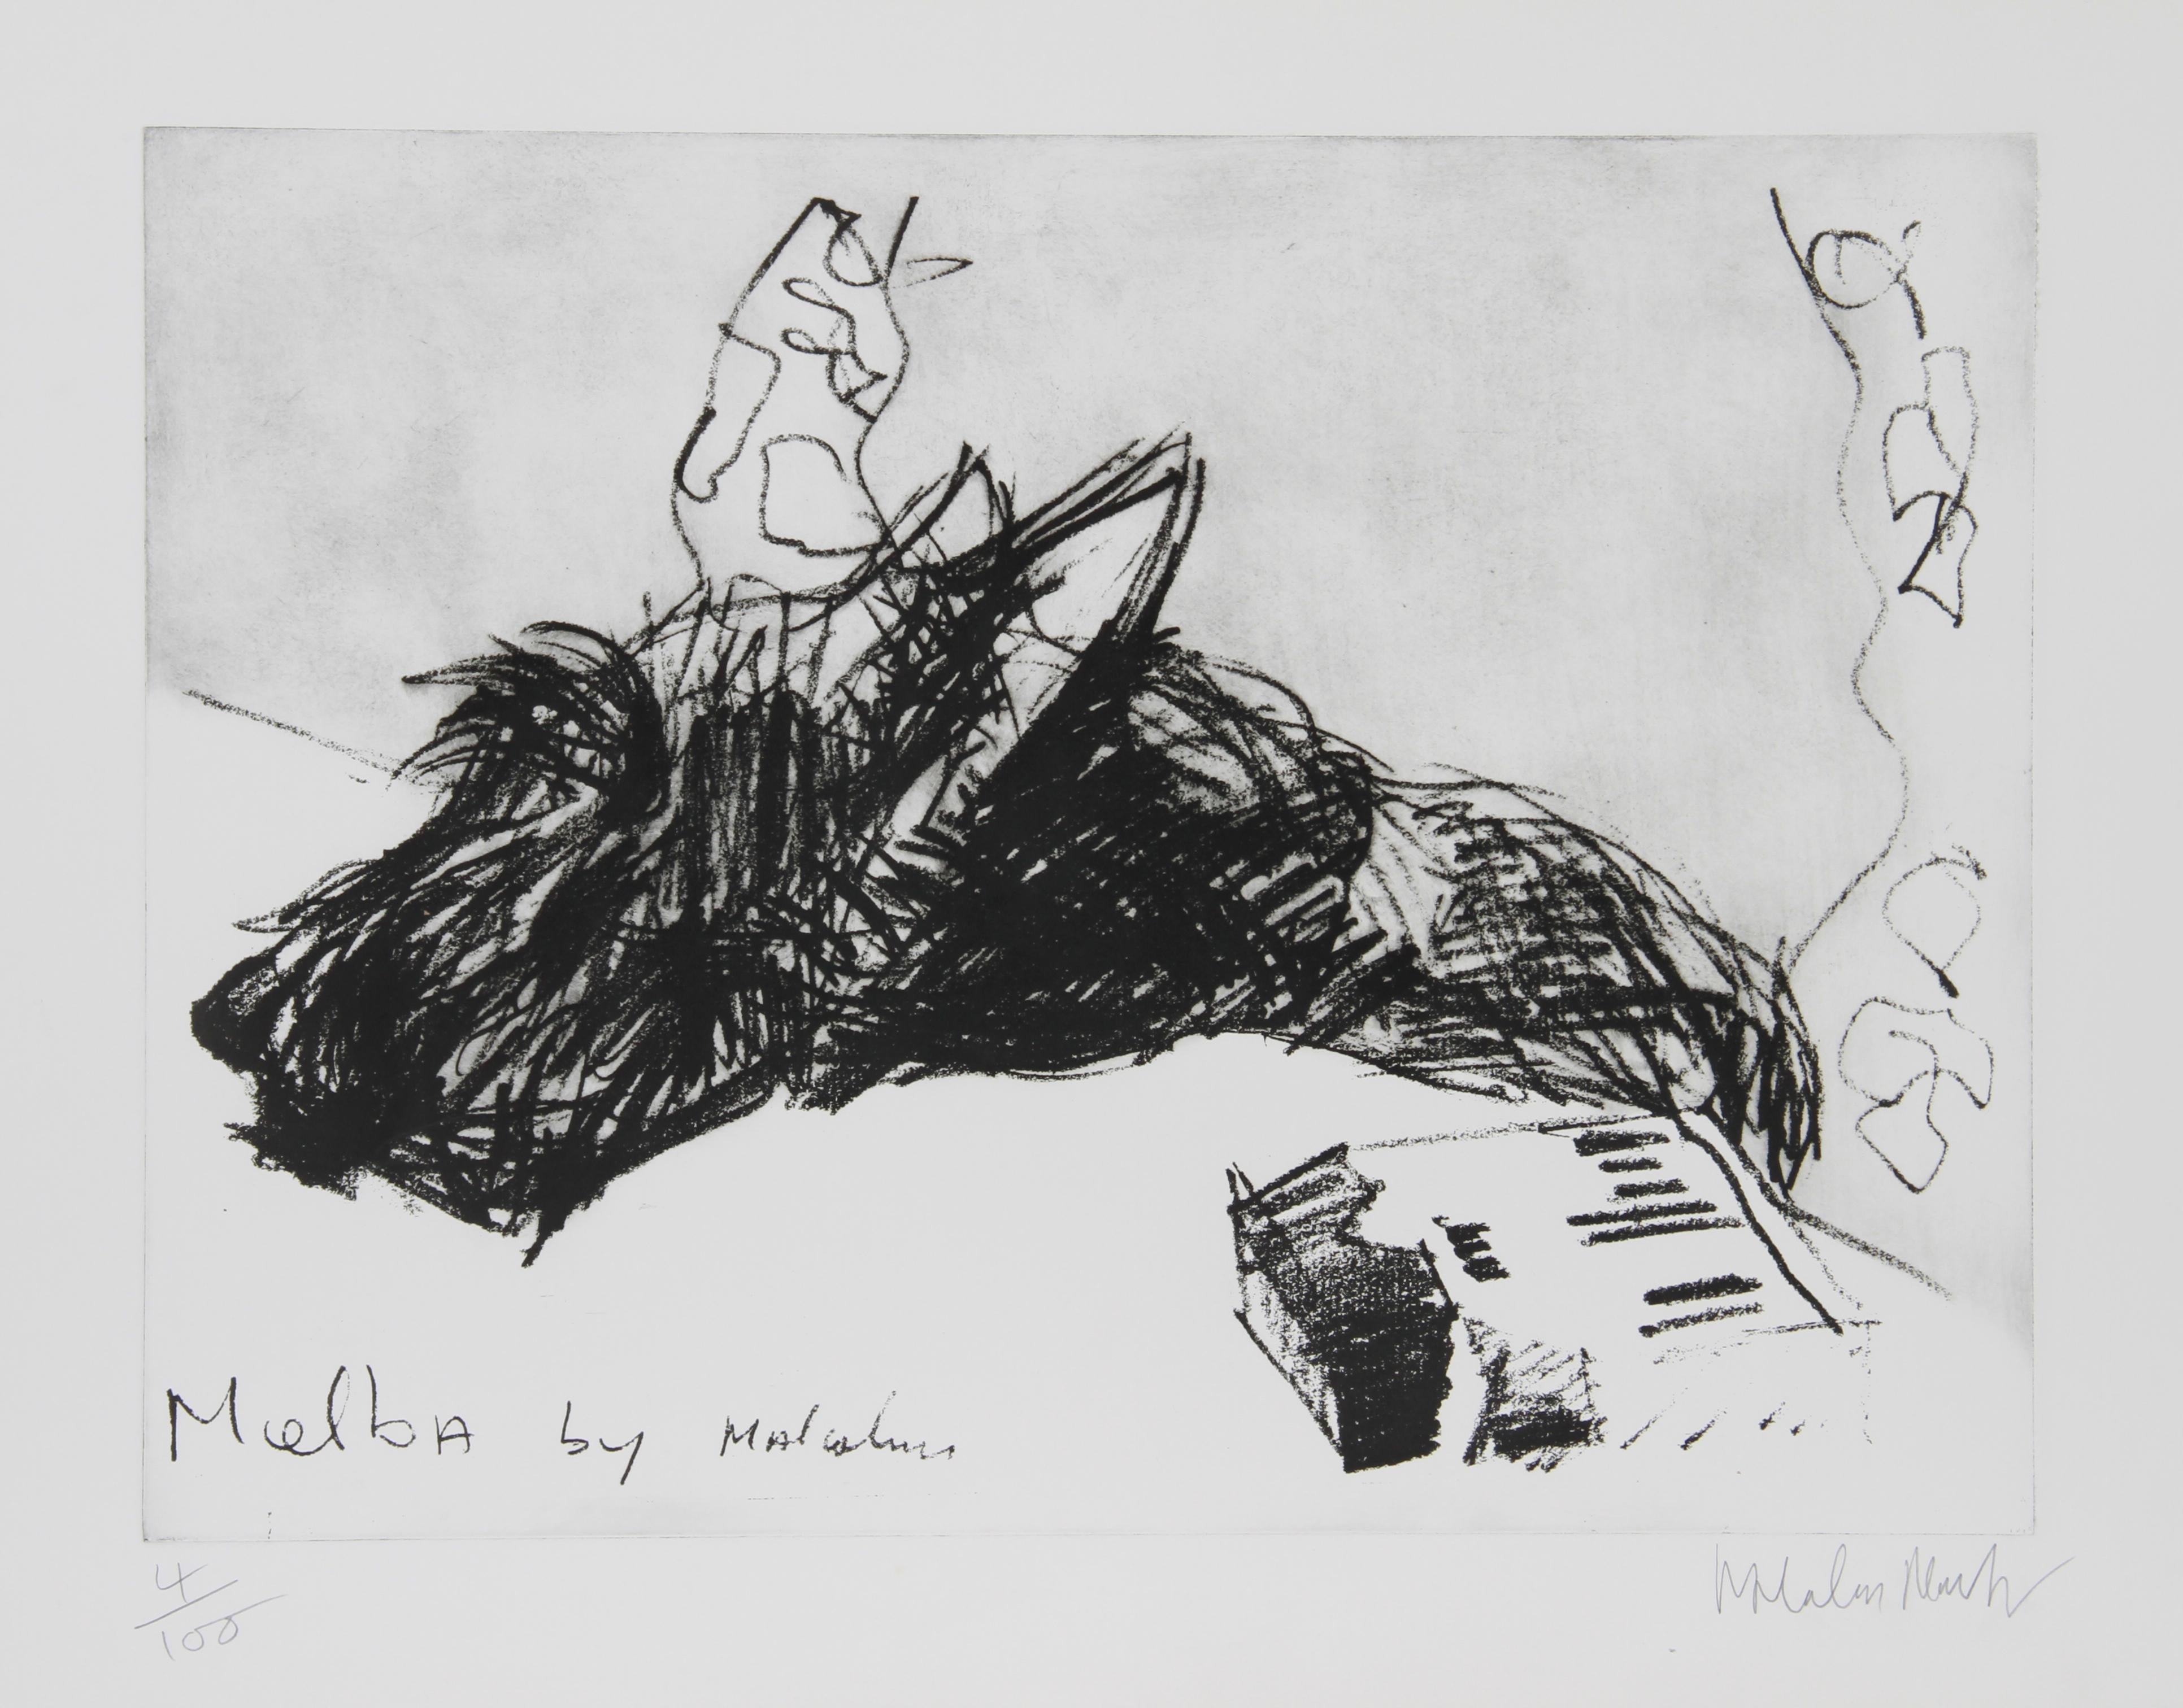 Artiste : Malcolm Morley, britannique (1931 - 2018)
Titre : Melba par Malcolm
Année : vers 1980
Médium : Eau-forte, signée et numérotée au crayon
Edition : 100
Taille de l'image : 18 x 24 pouces
Taille : 22 in. x 30 in. (55,88 cm x 76,2 cm)